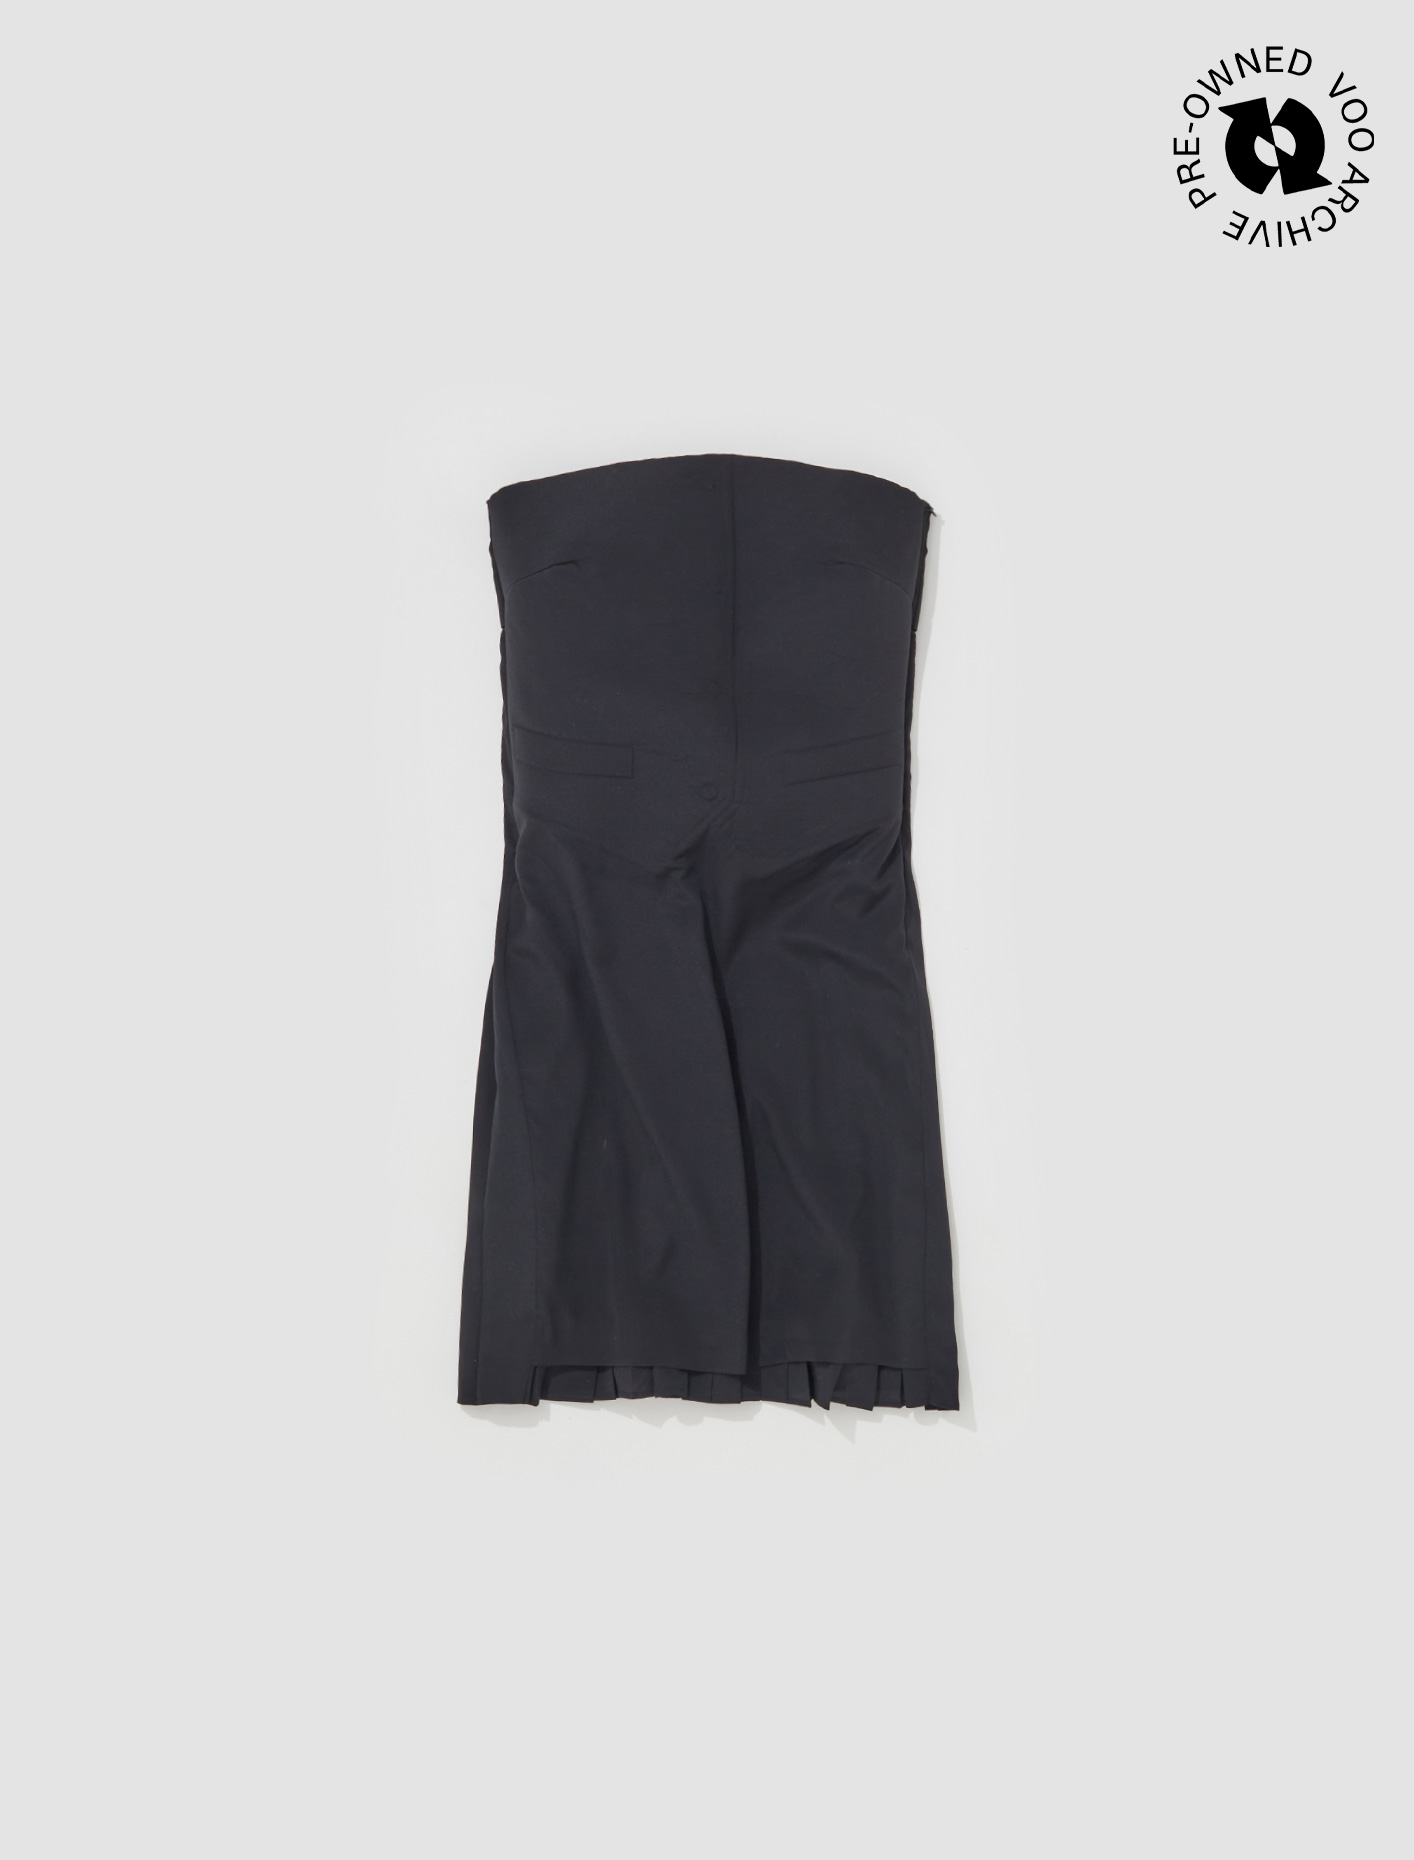 Maison Margiela Tuxedo Dress in Black | Voo Store Berlin | Worldwide ...